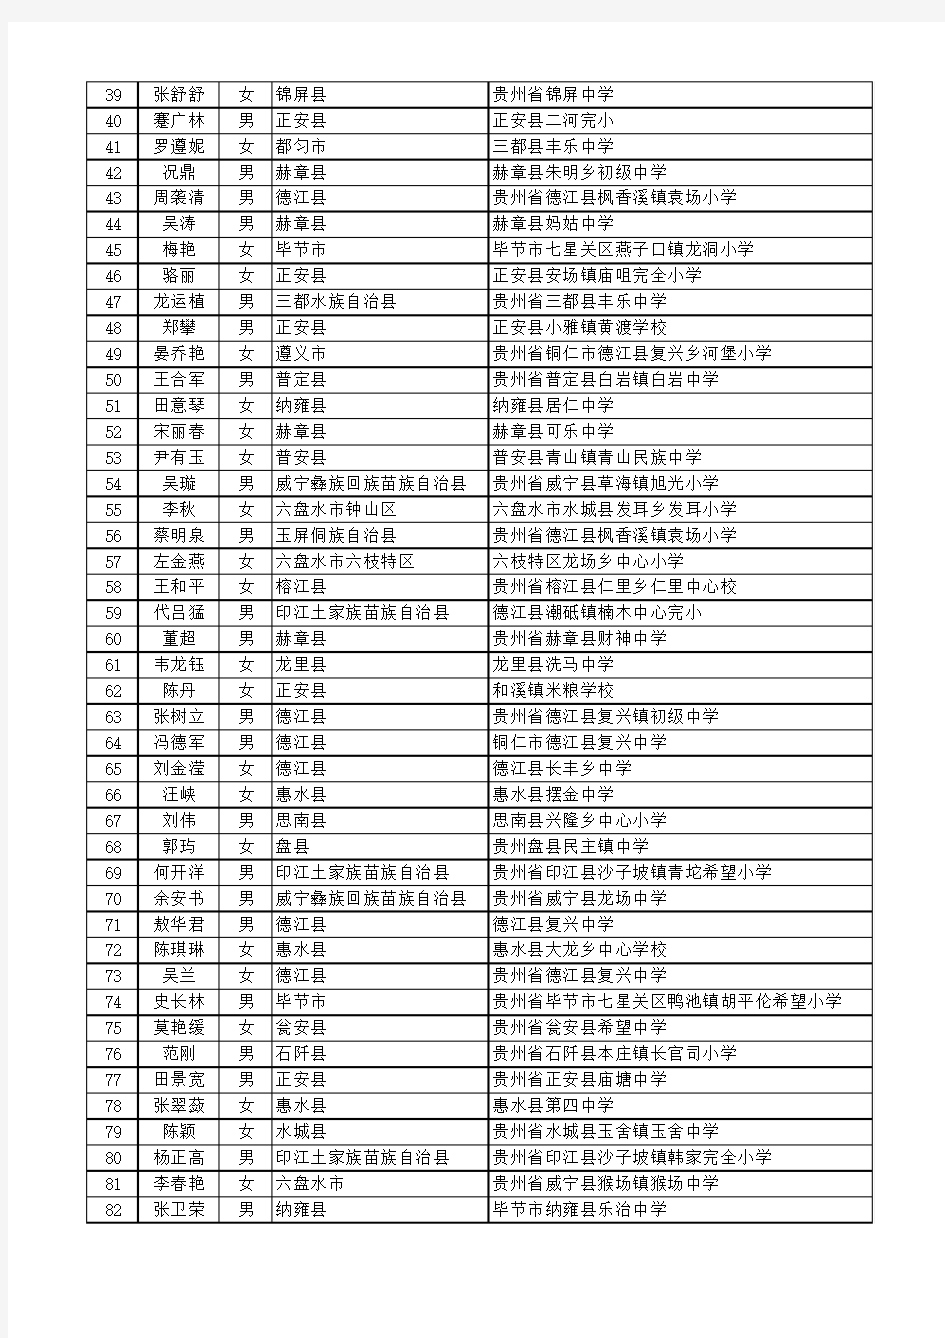 2012年贵州省特岗攻读研究生公示名单